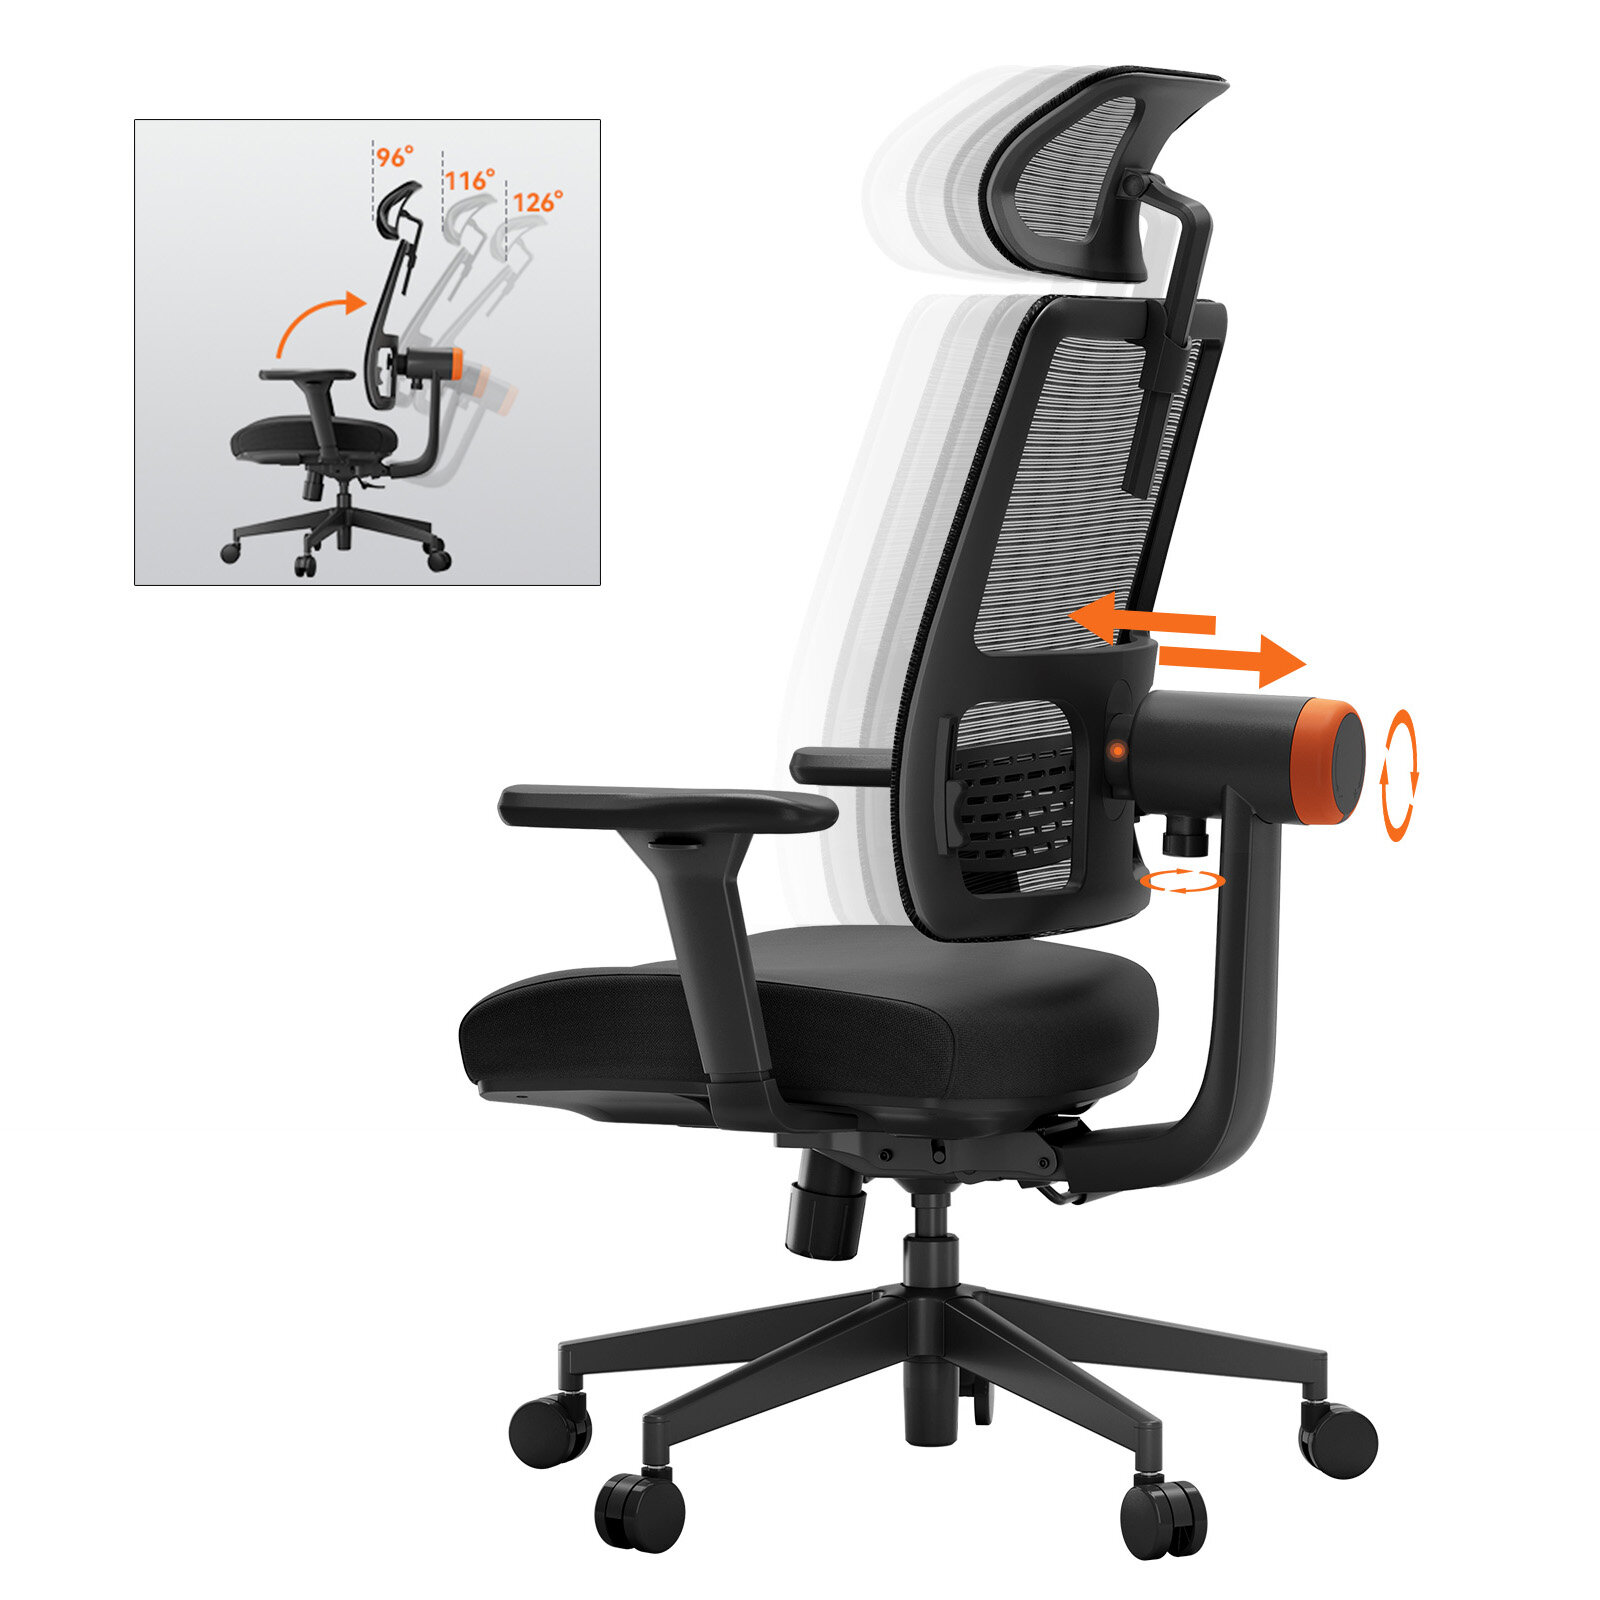 Fotel ergonomiczny Newtral MagicH002 z EU za $195.99 / ~780zł